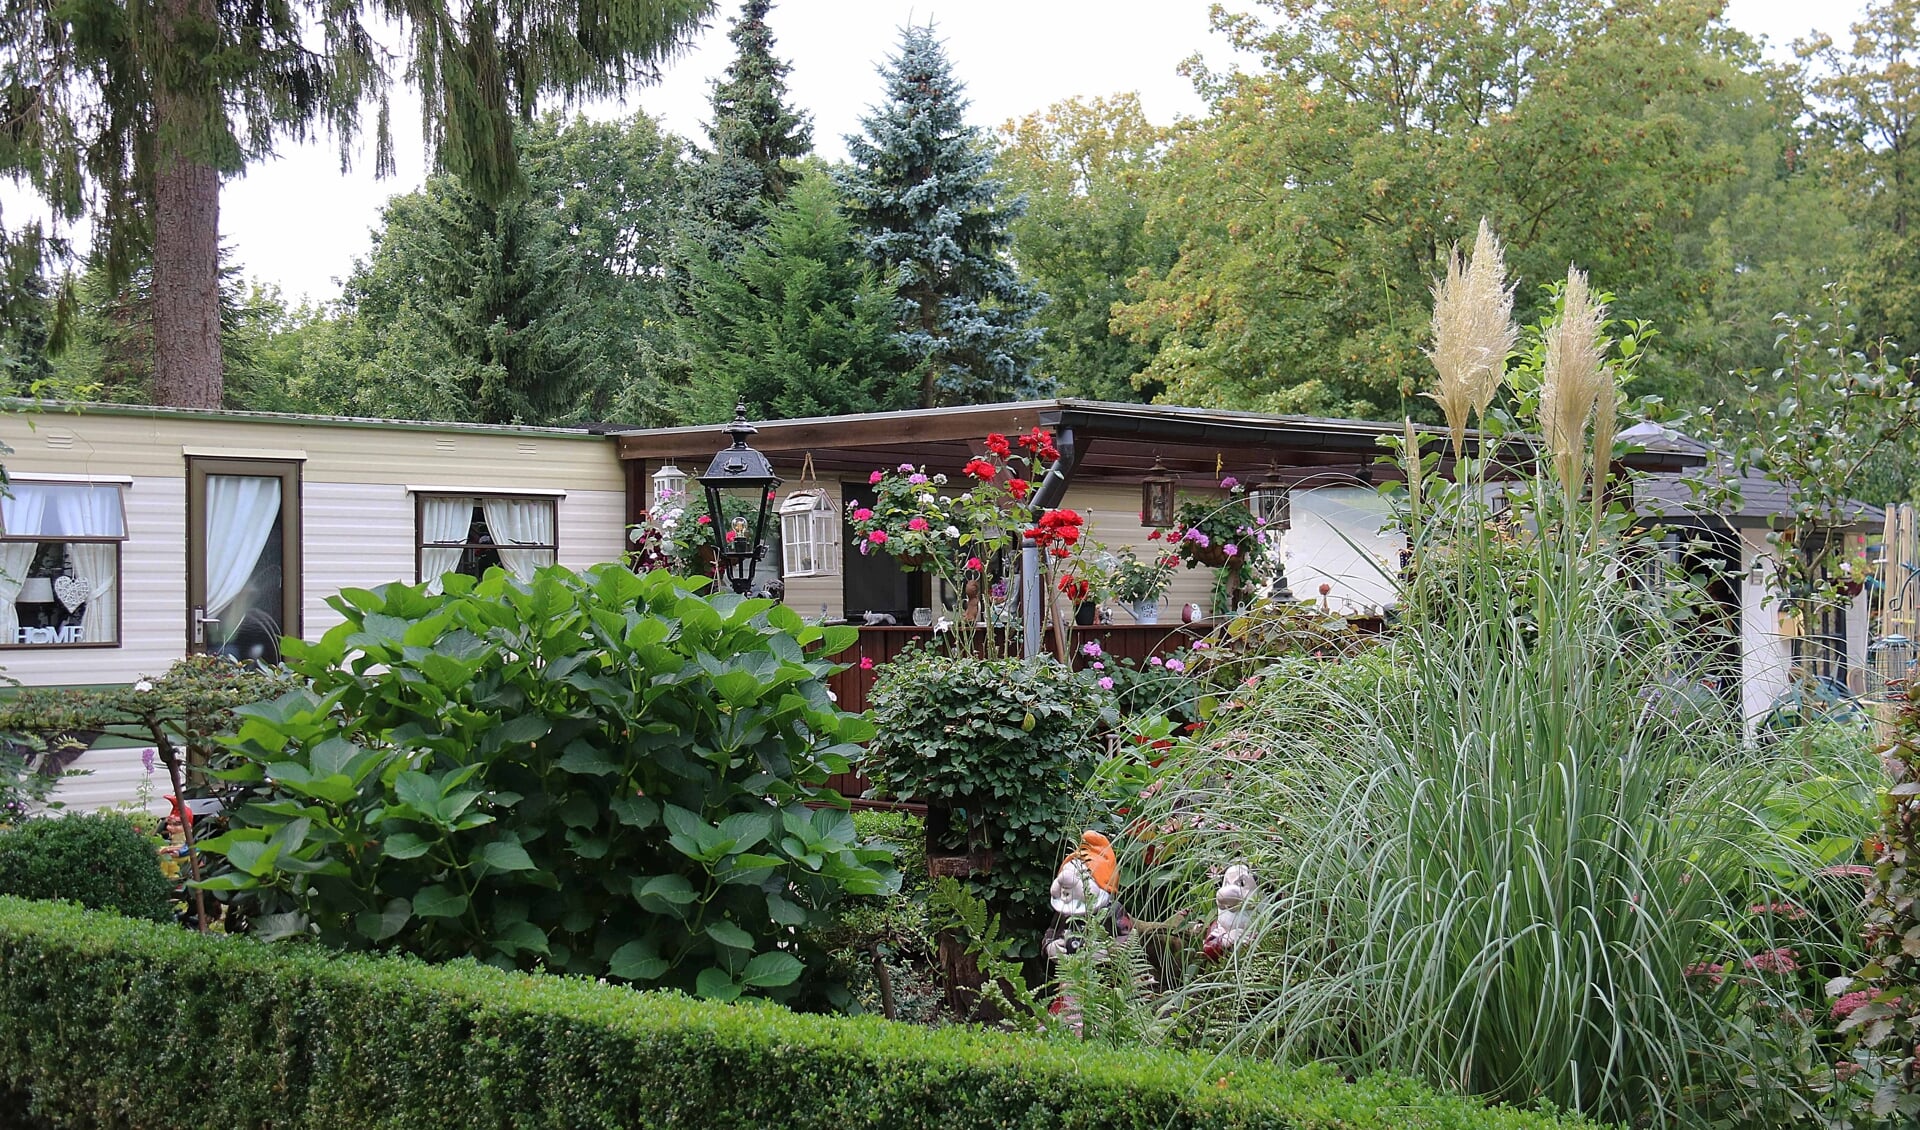 Eigenaren van bestaande stacaravans met verzorgde tuinen kunnen vooralsnog jaarlijks hun plek blijven huren bij EuroParcs.